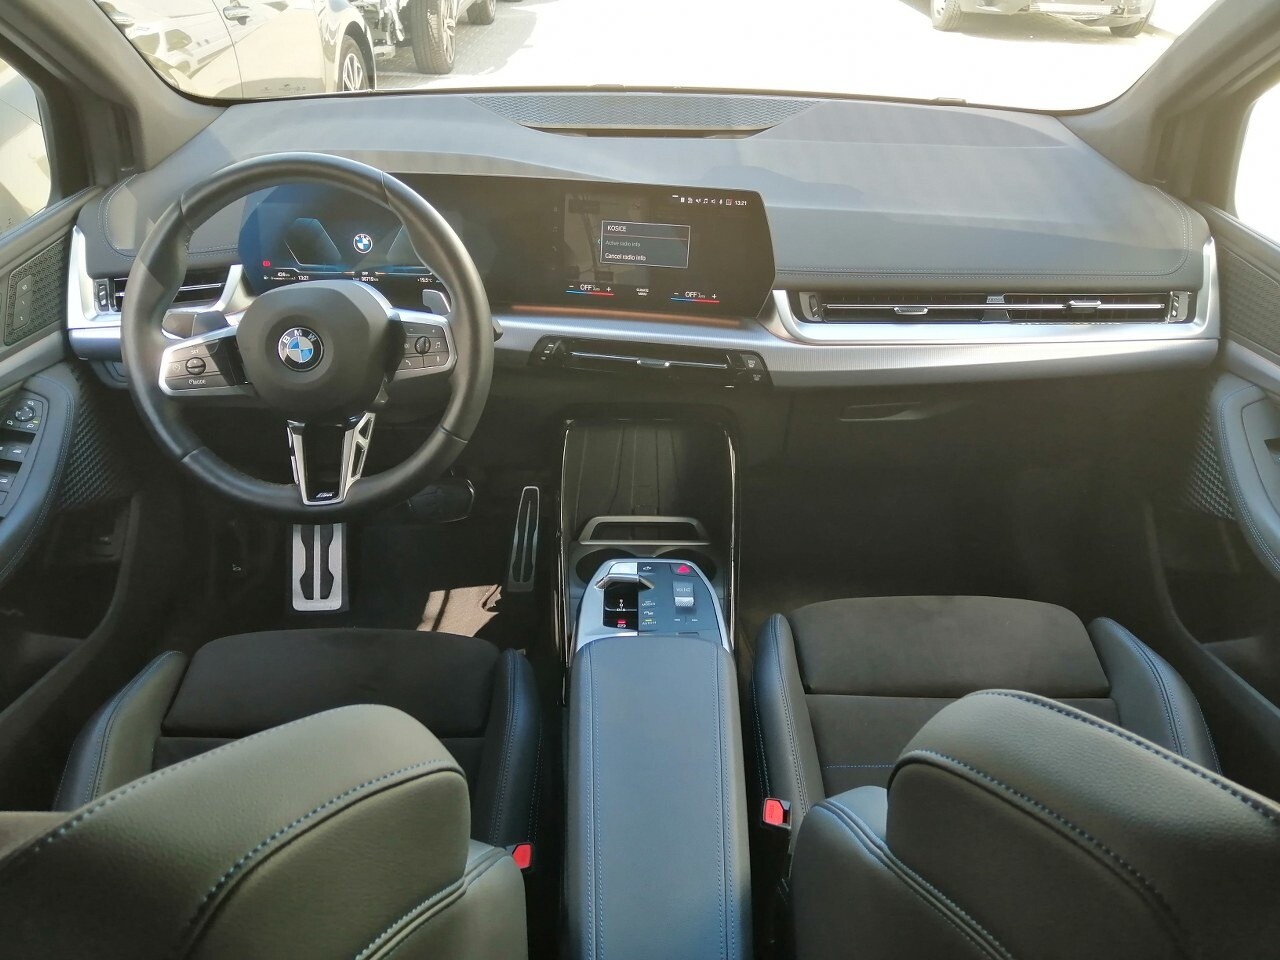 BMW Rad 2